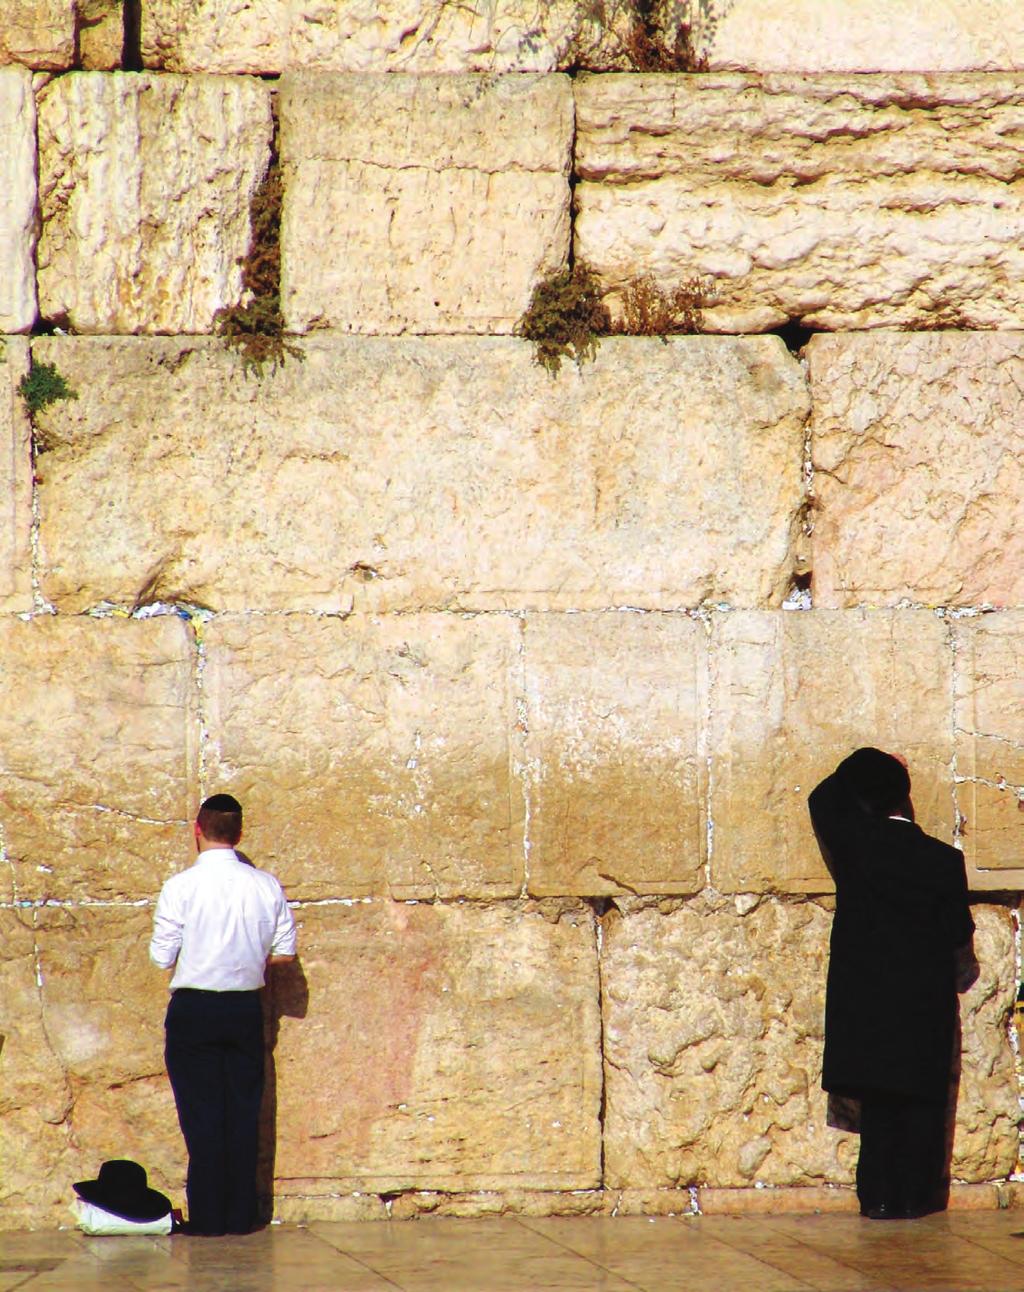 Mustafa Yılmaz / Ağlama Duvarı - Kudüs İSLAM DIŞI DİNLERDE KUTSALA YOLCULUK Ali ERBAŞ * İBRÂHİMÎ KÖKENLİ YAHUDİLİK VE HIRİSTİYANLIK TA BİLE İSLÂM DAKİ GİBİ BİR NETLİK YOKTUR.